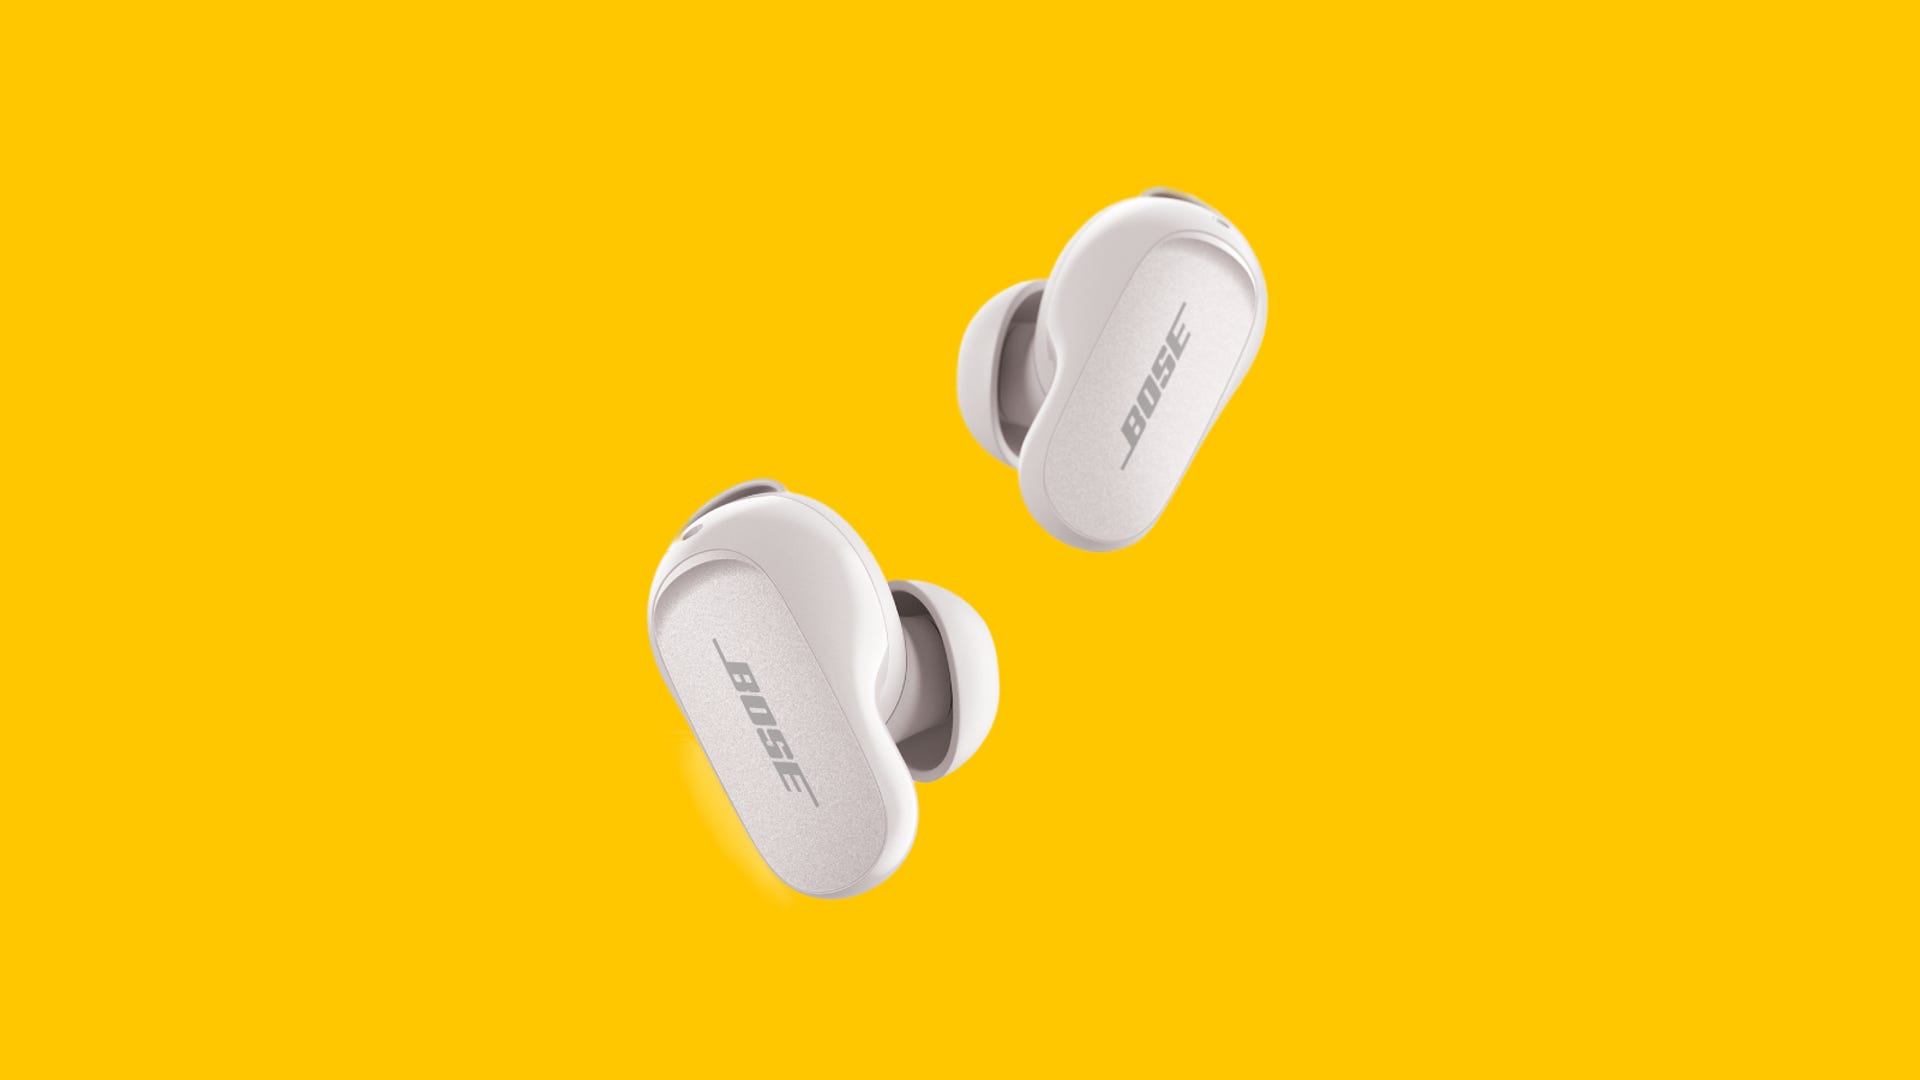 Bose QuietComfort Earbuds 2 in sandstone color